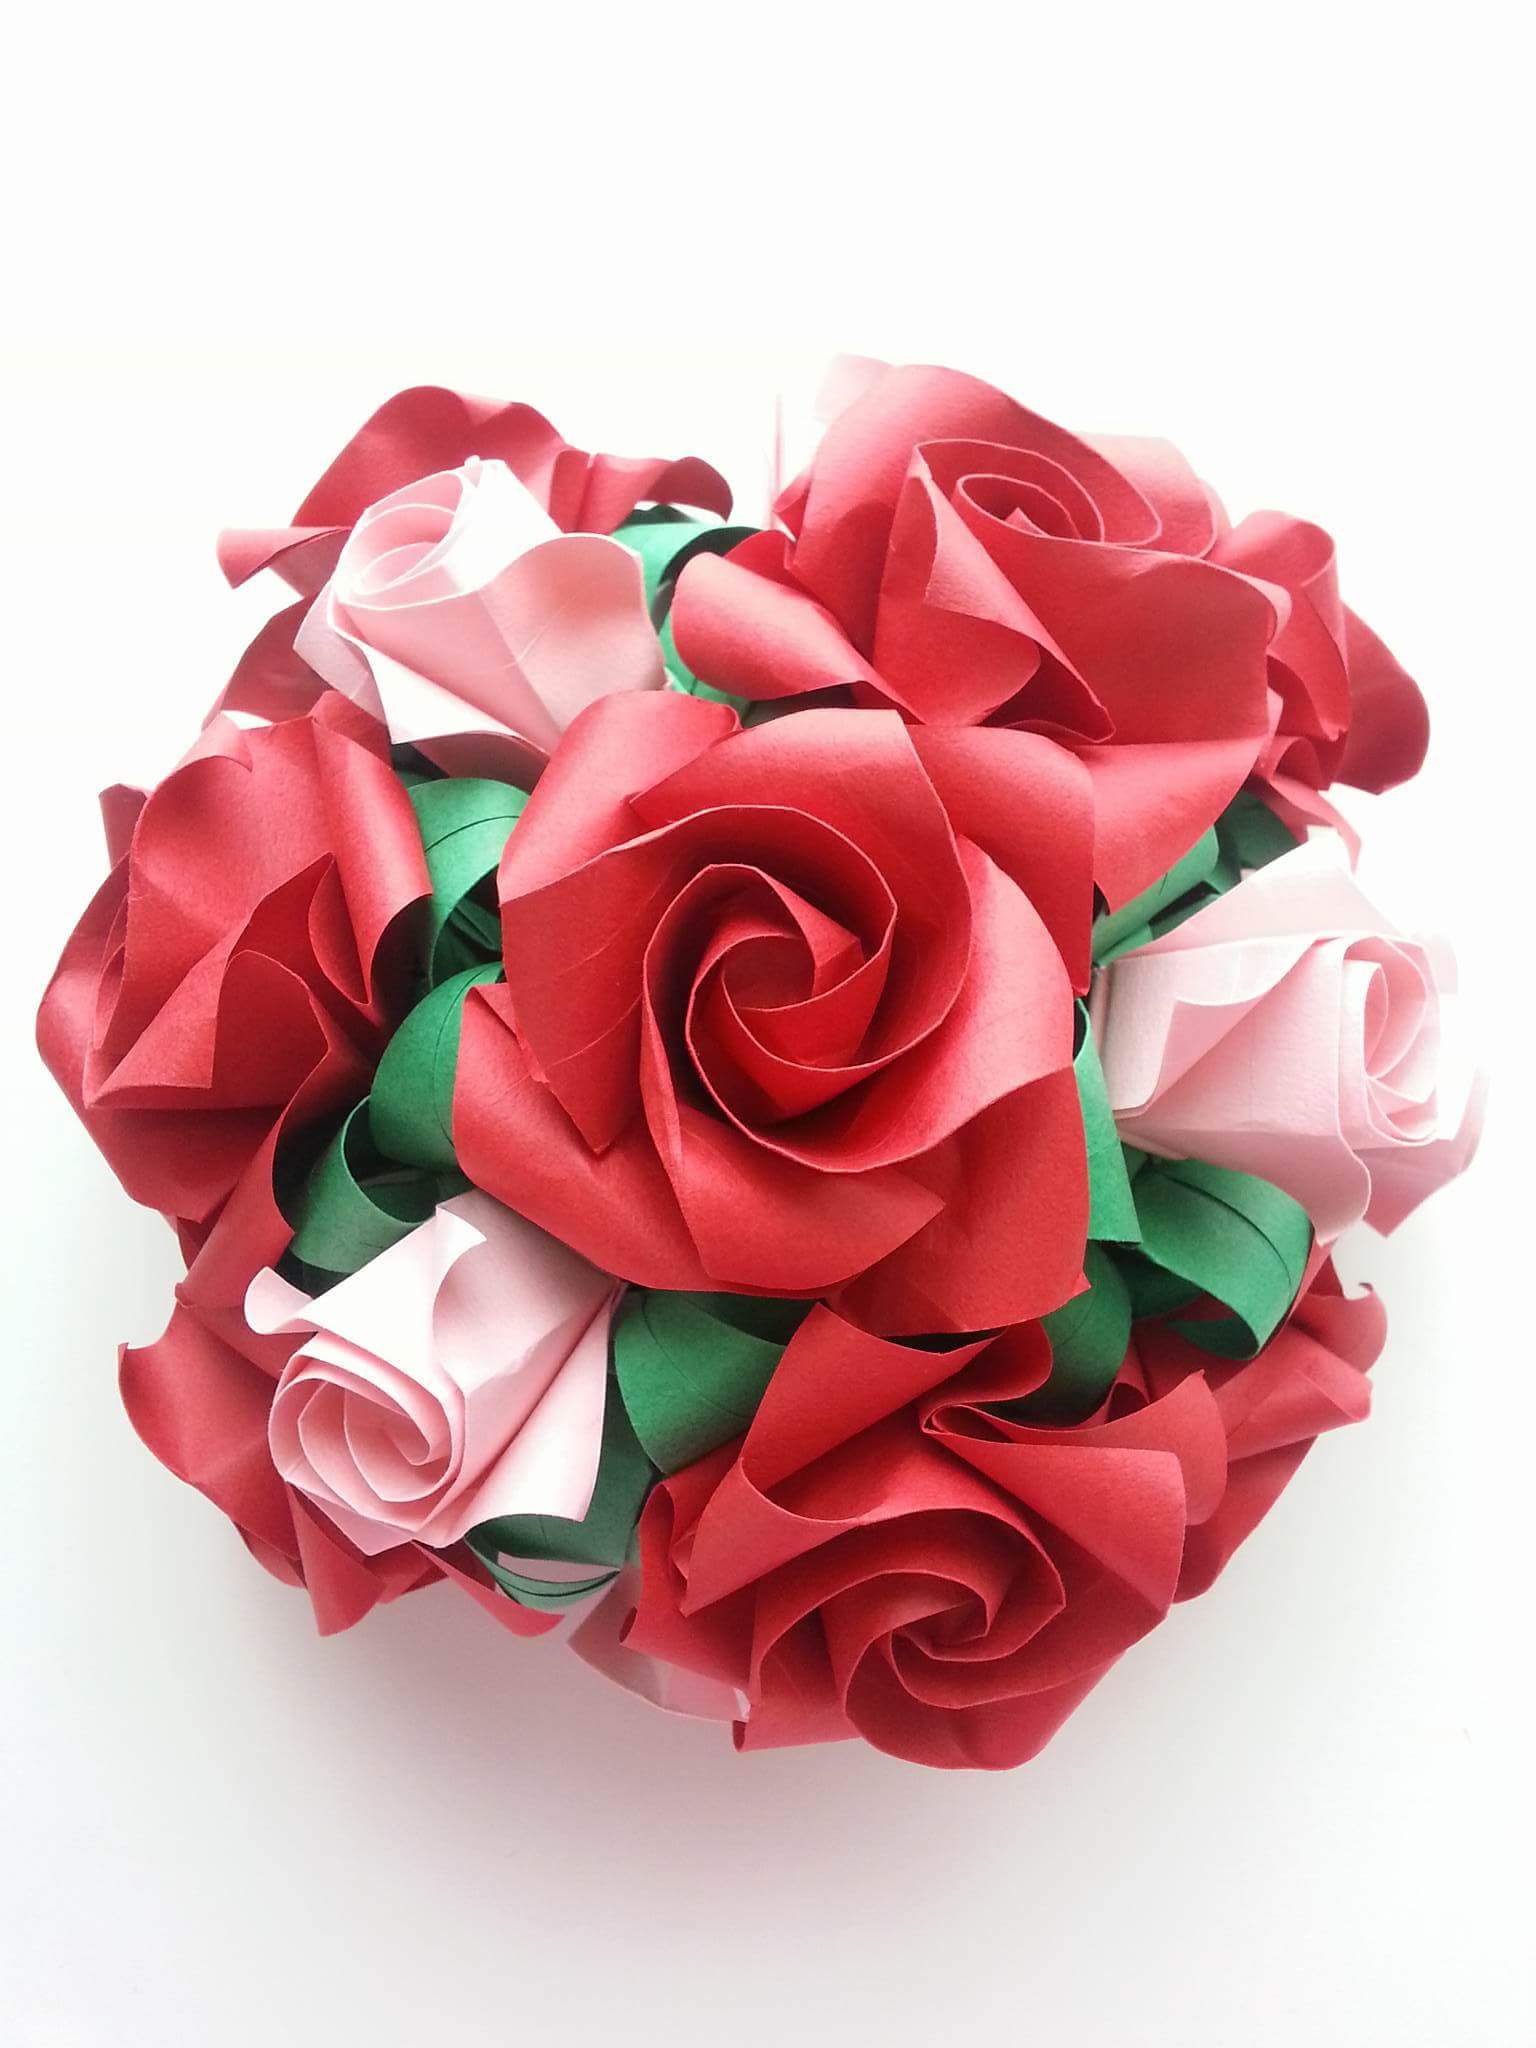 【折り紙のバラ】認知症の実母の目が輝いた真っ赤なバラのブーケの想い出と再現